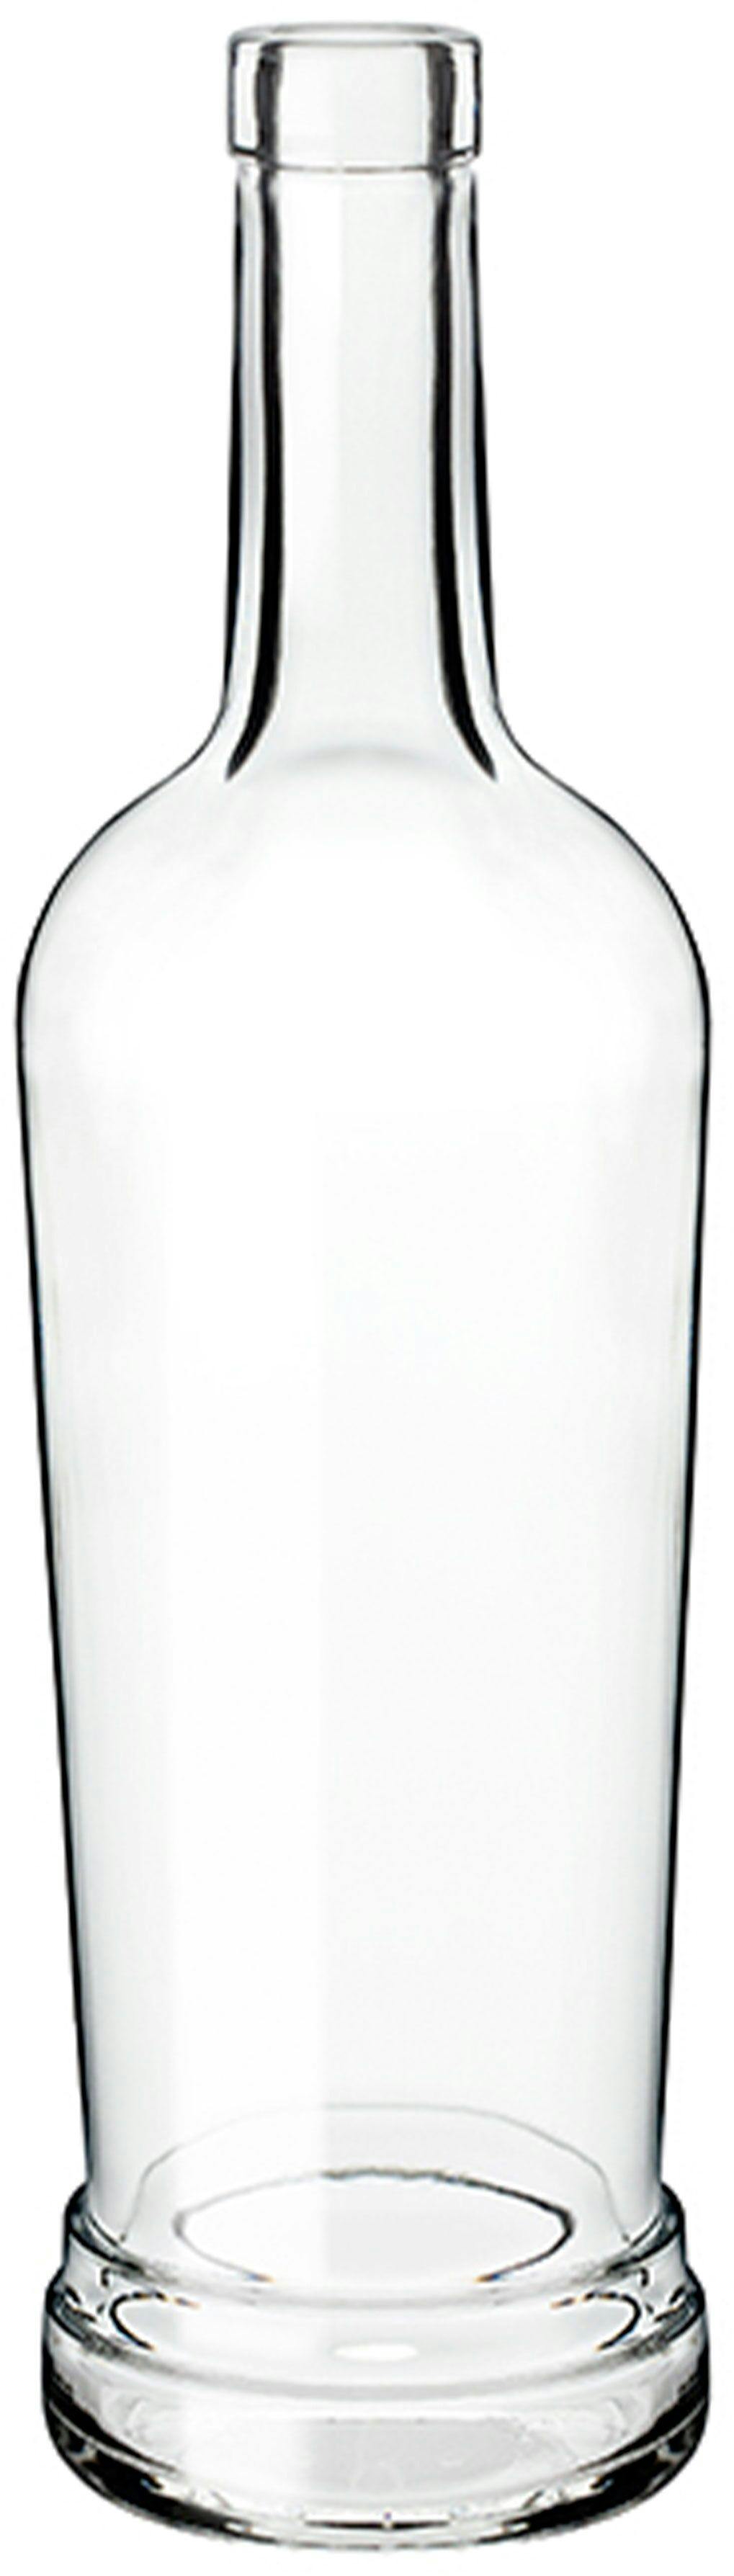 Botella PILAR 1000 F 14 VA